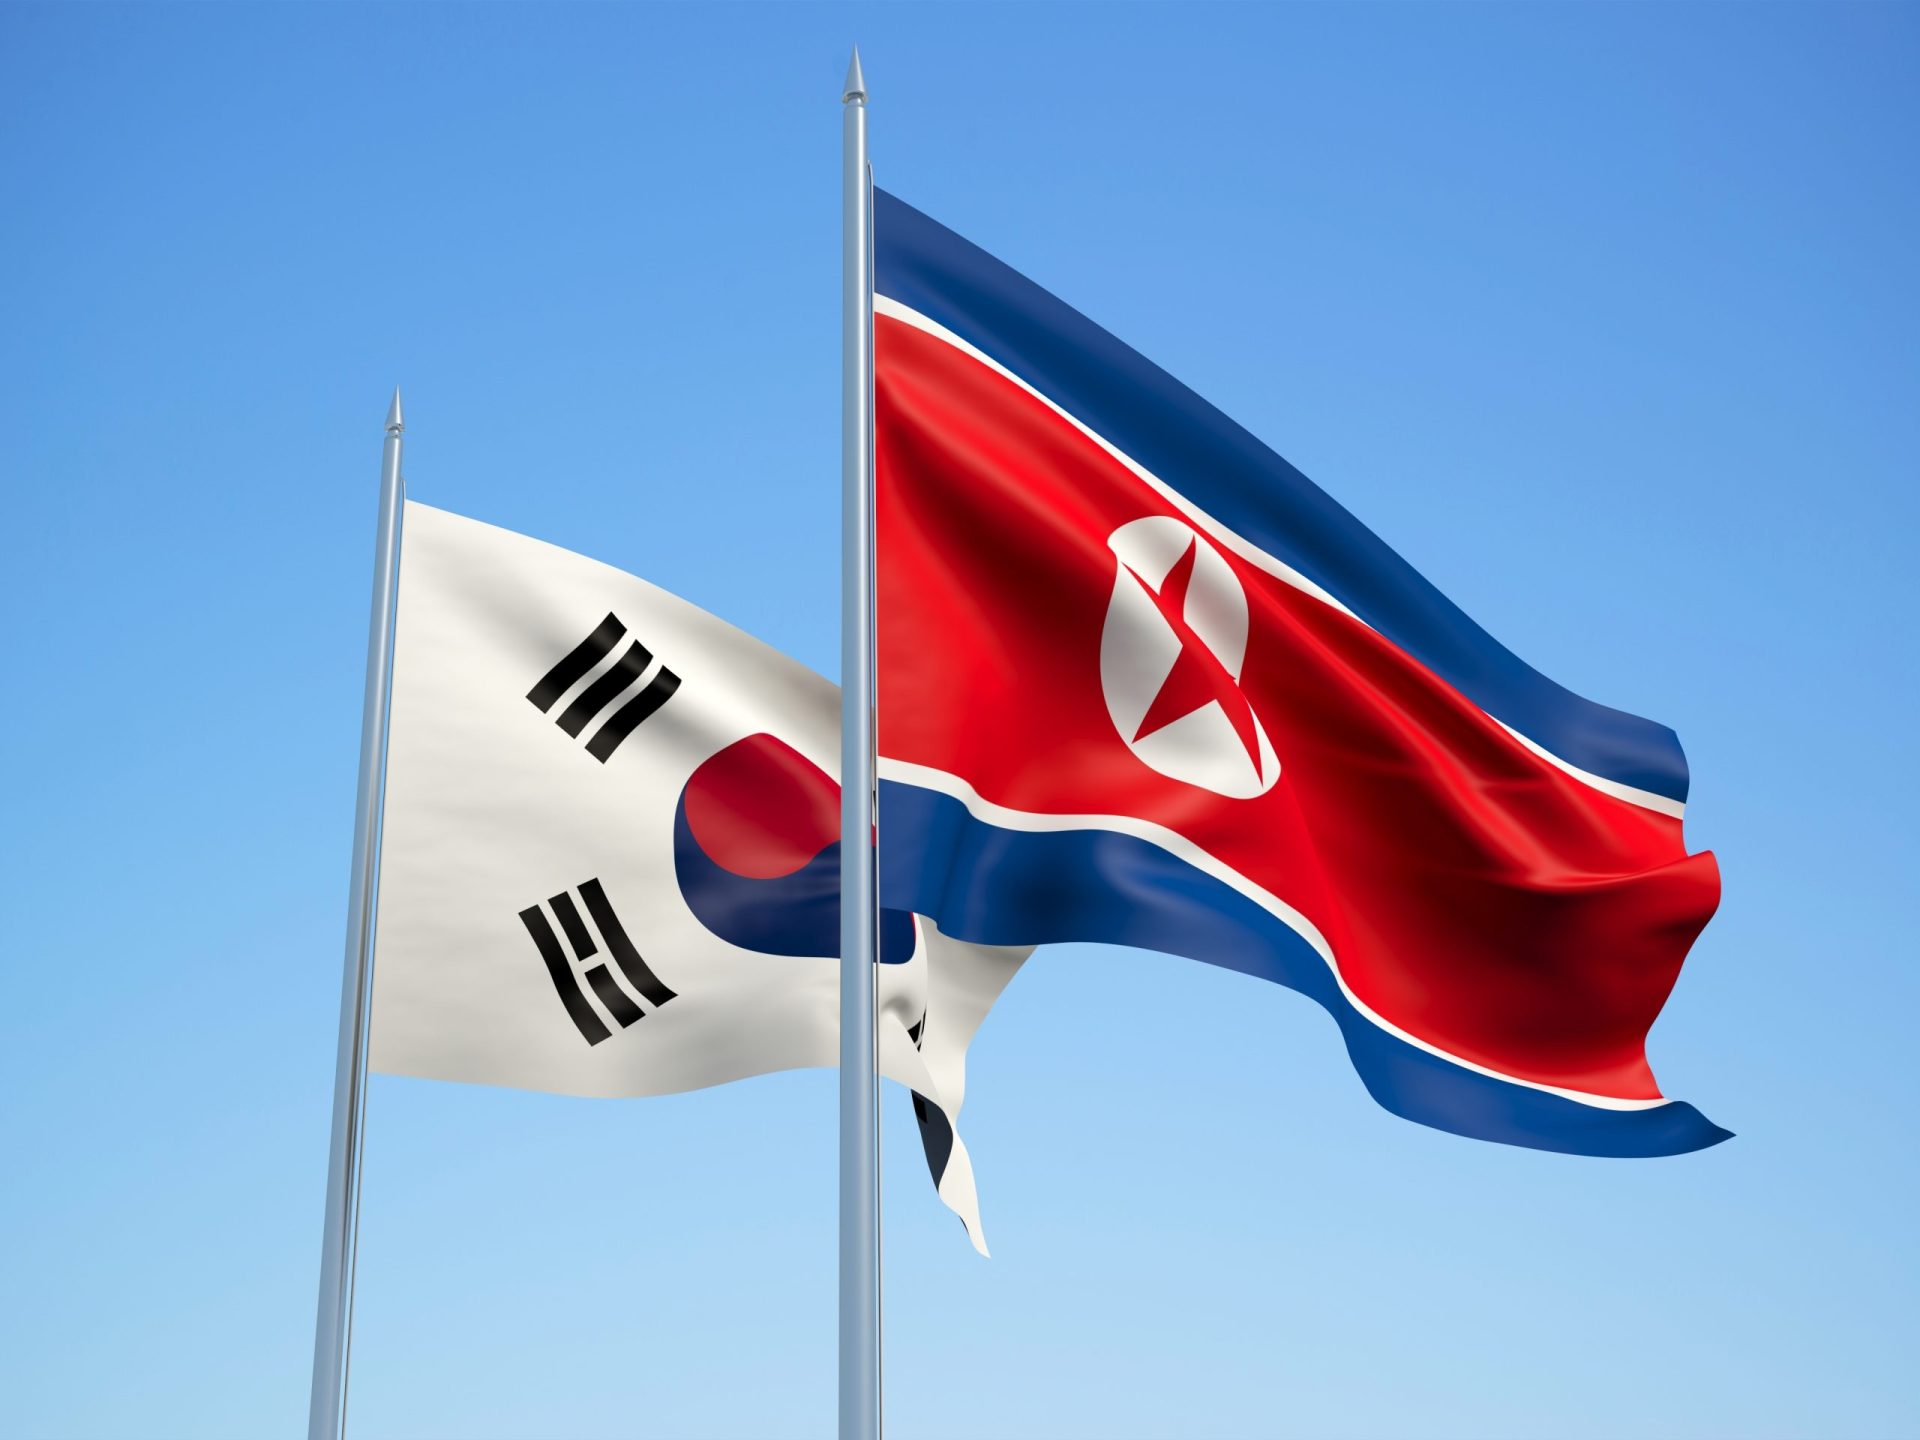 Coreias criam linha de comunicação entre os dois líderes